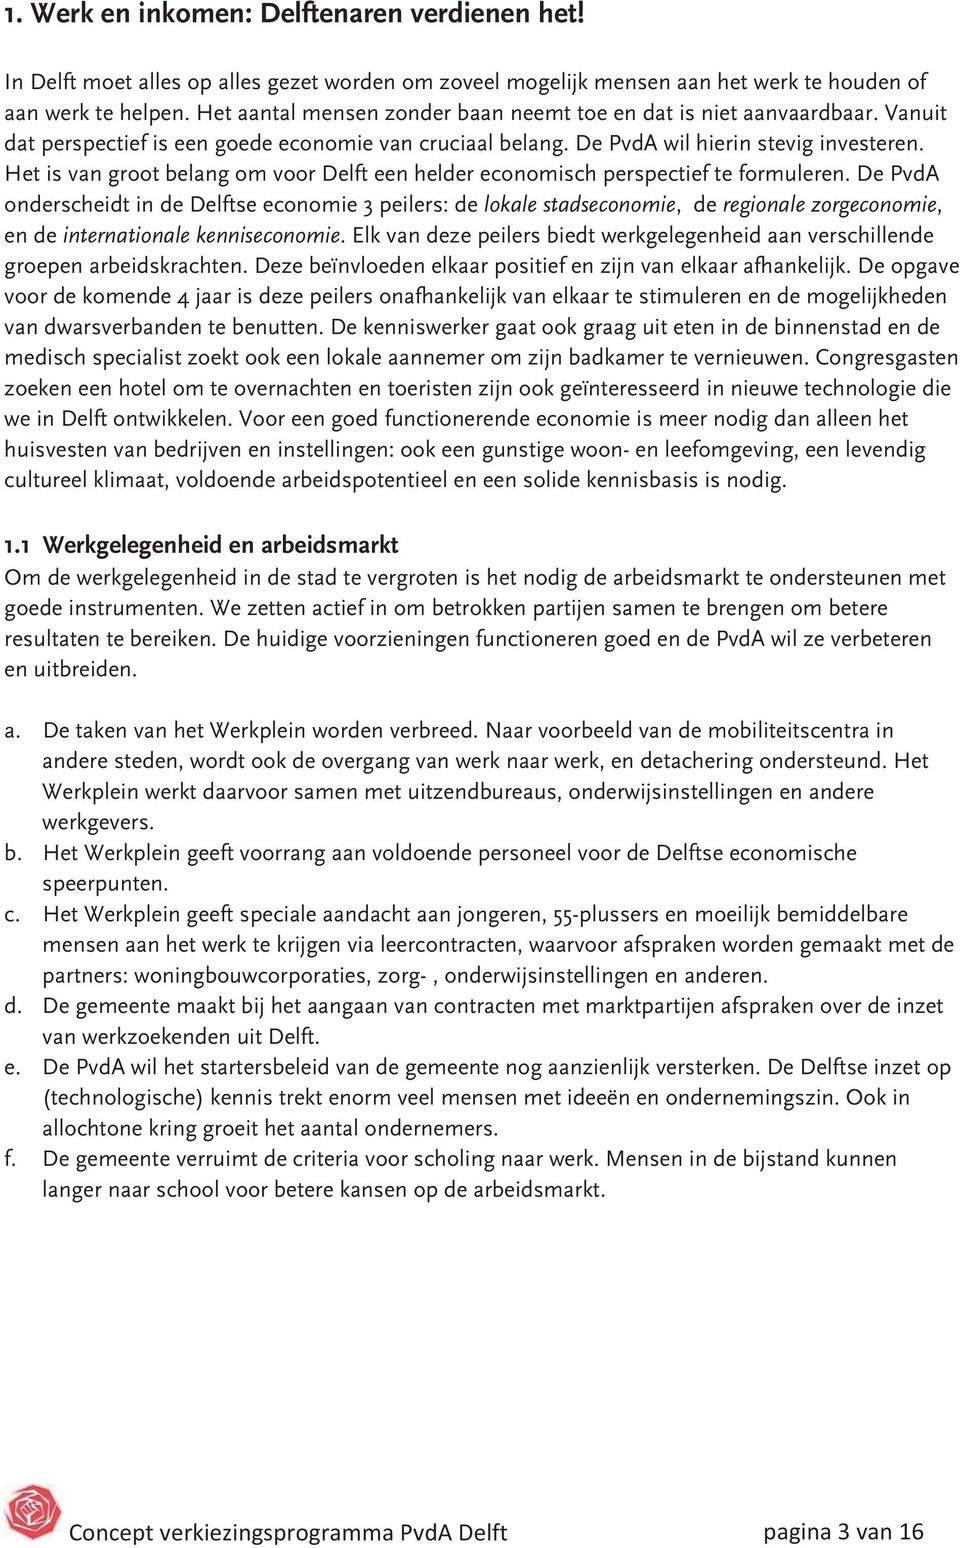 Het is van groot belang om voor Delft een helder economisch perspectief te formuleren.